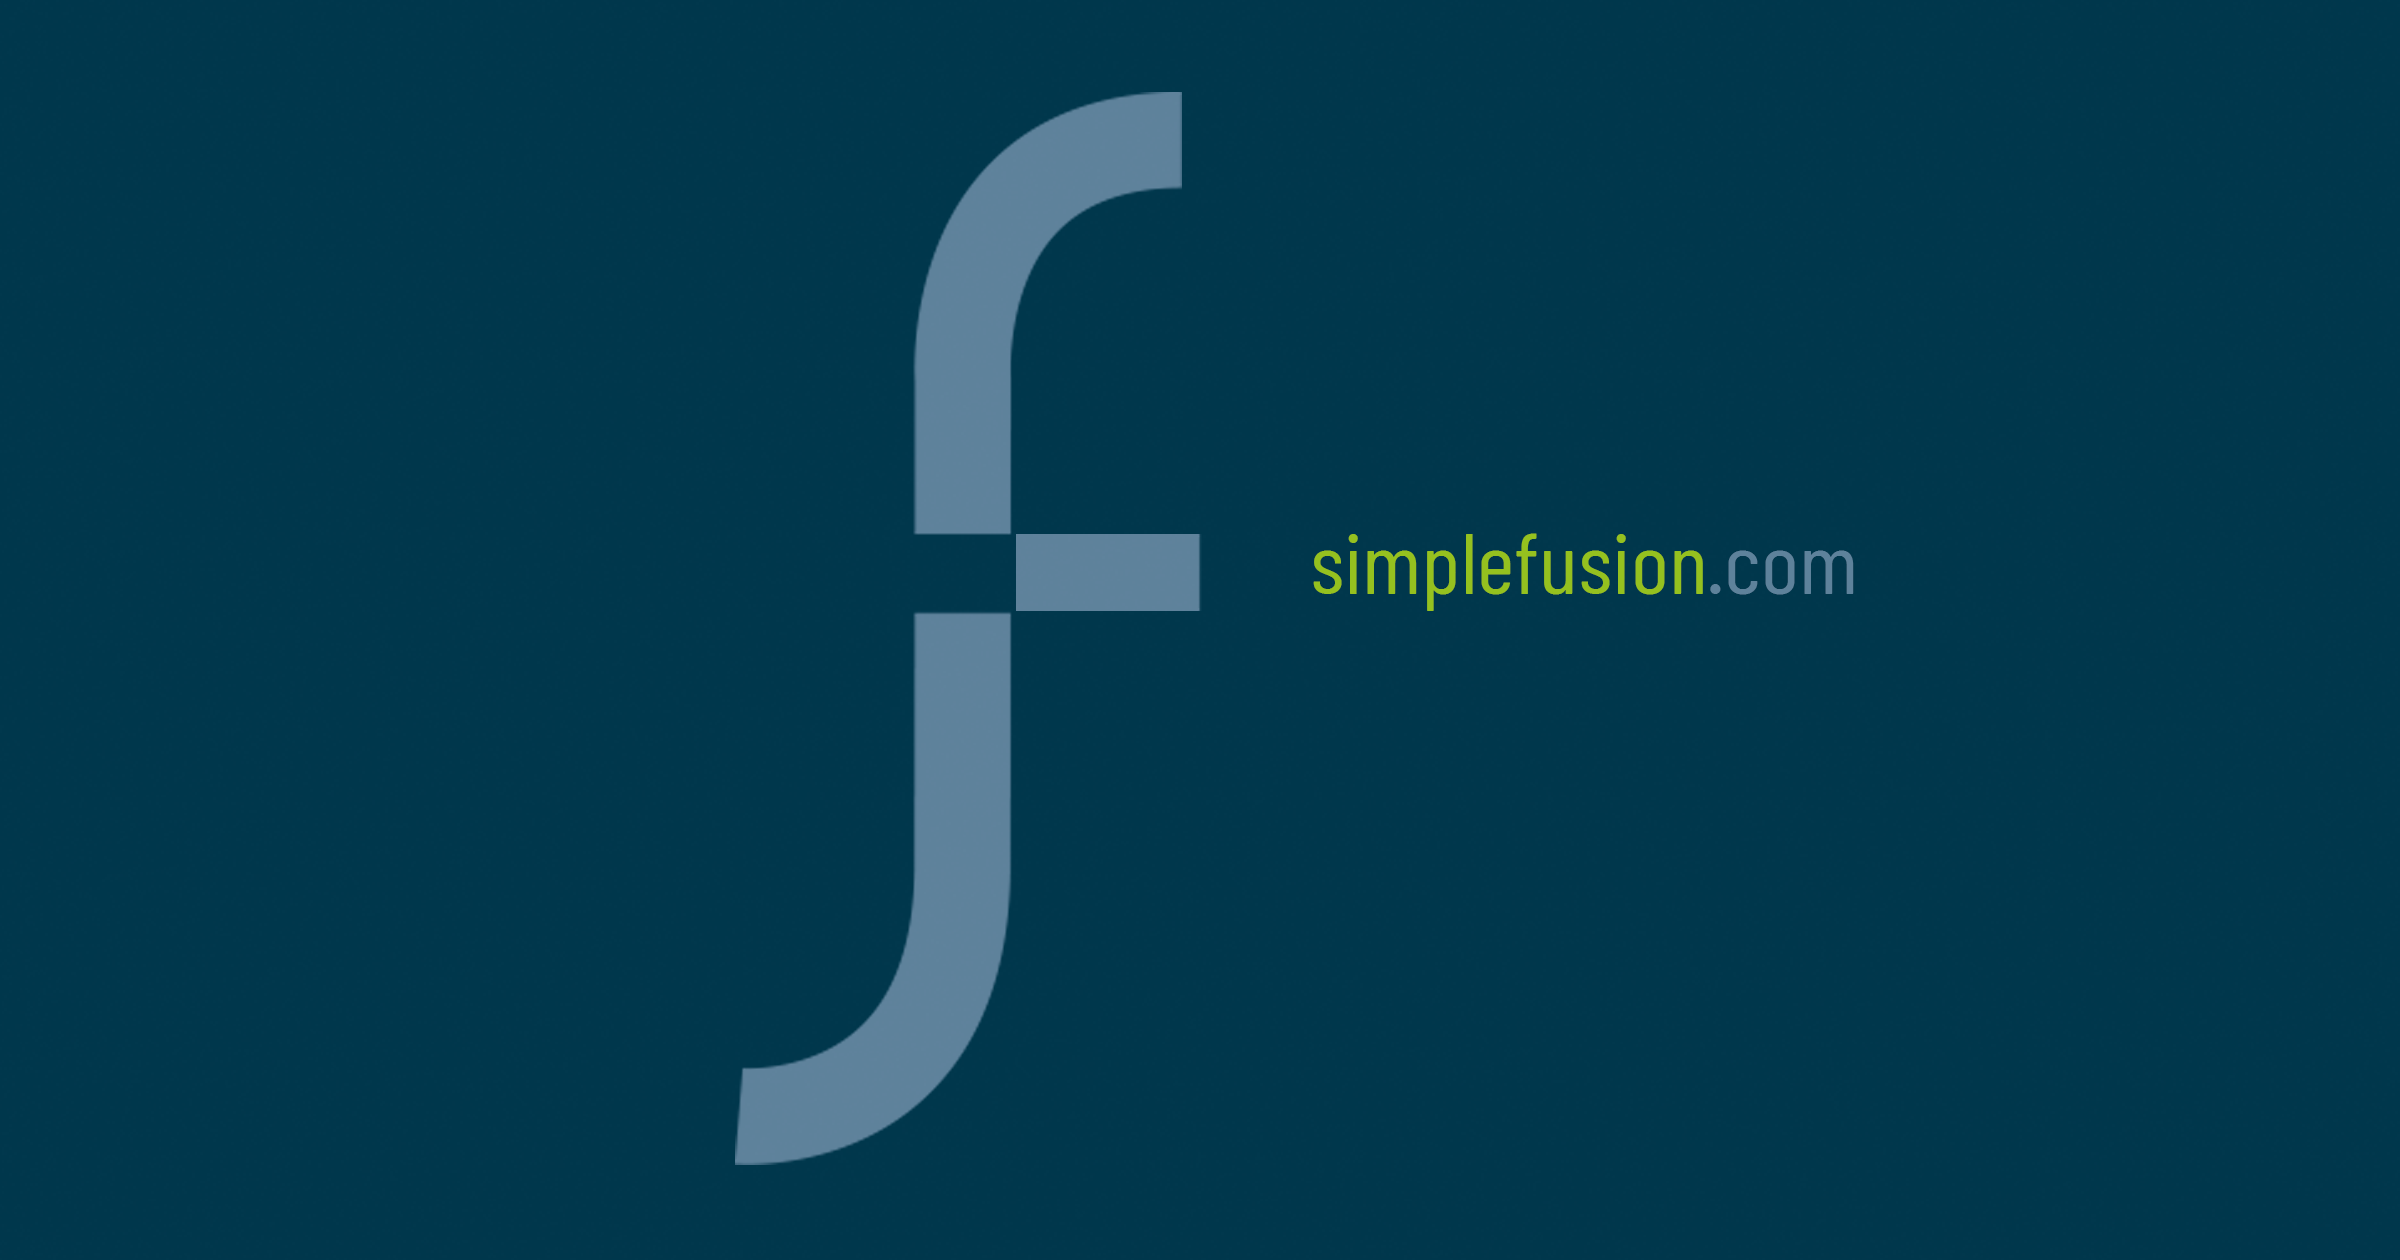 Simplefusion Inc